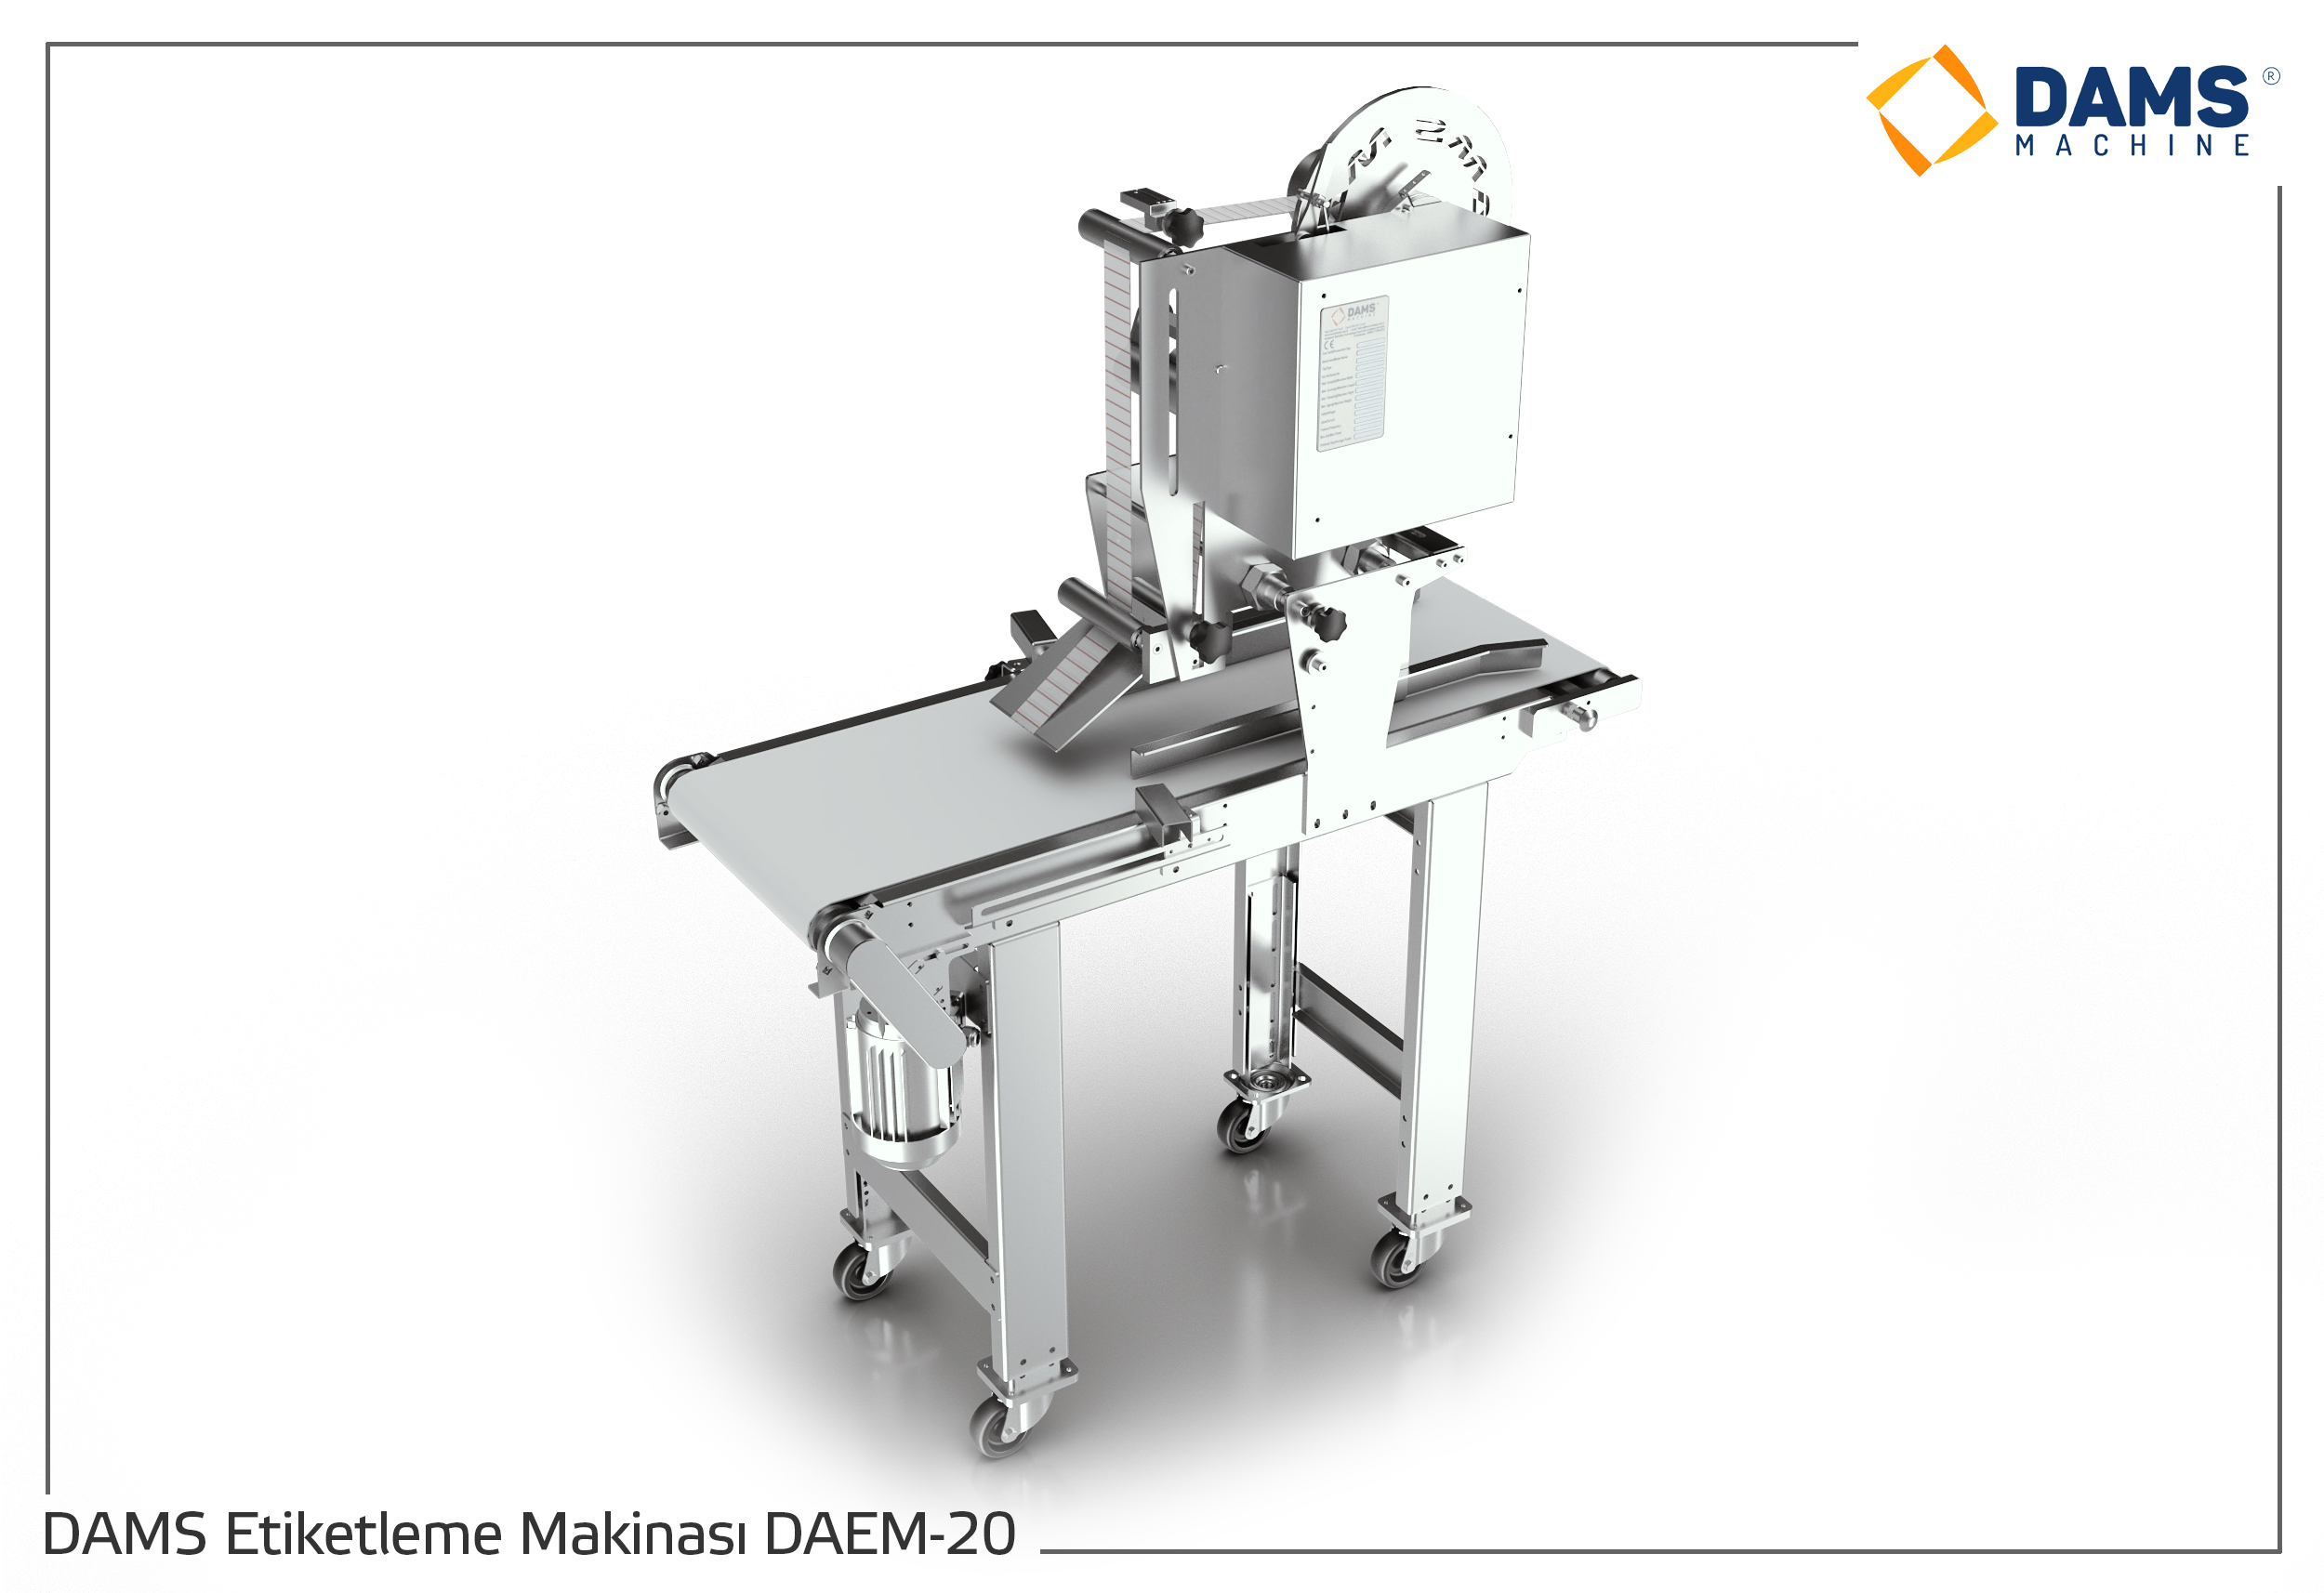 DAMS Etiketleme Makinası DAEM-20